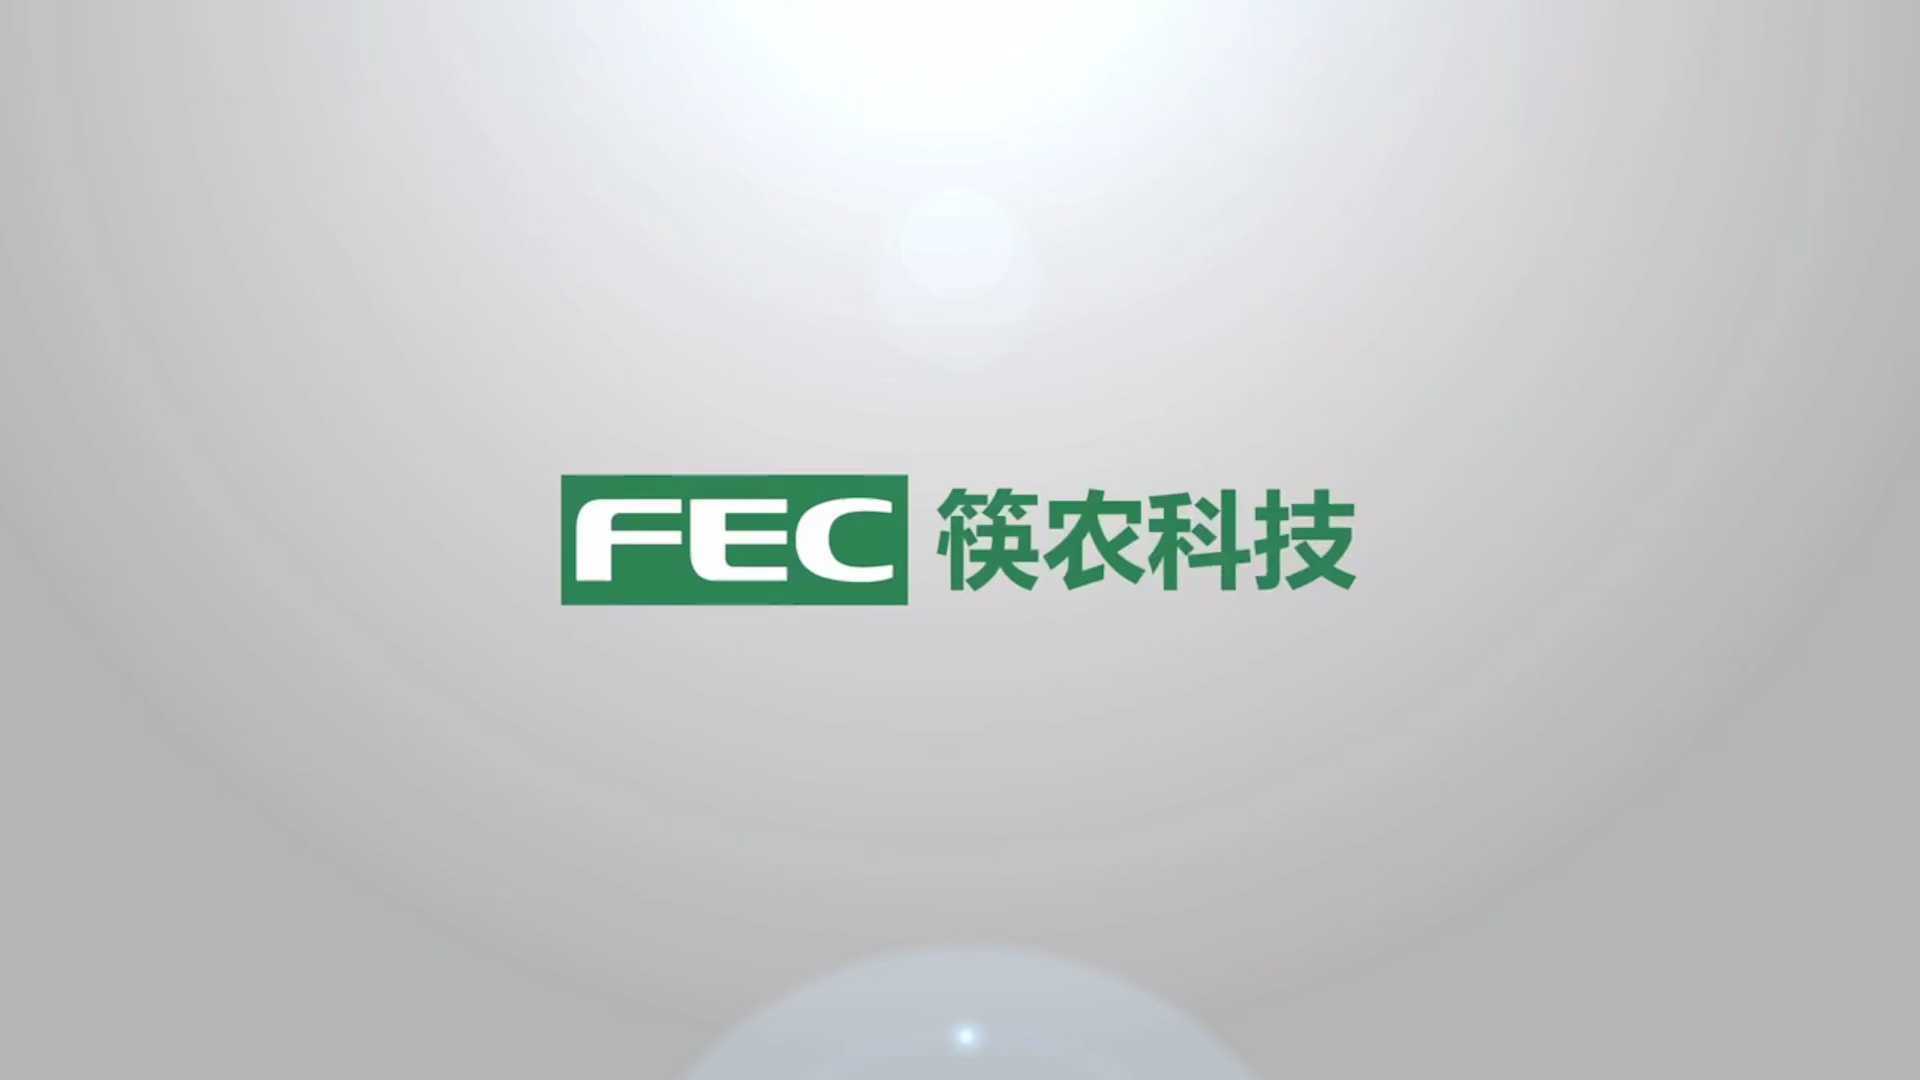 筷农-赋能农产品数字供应链